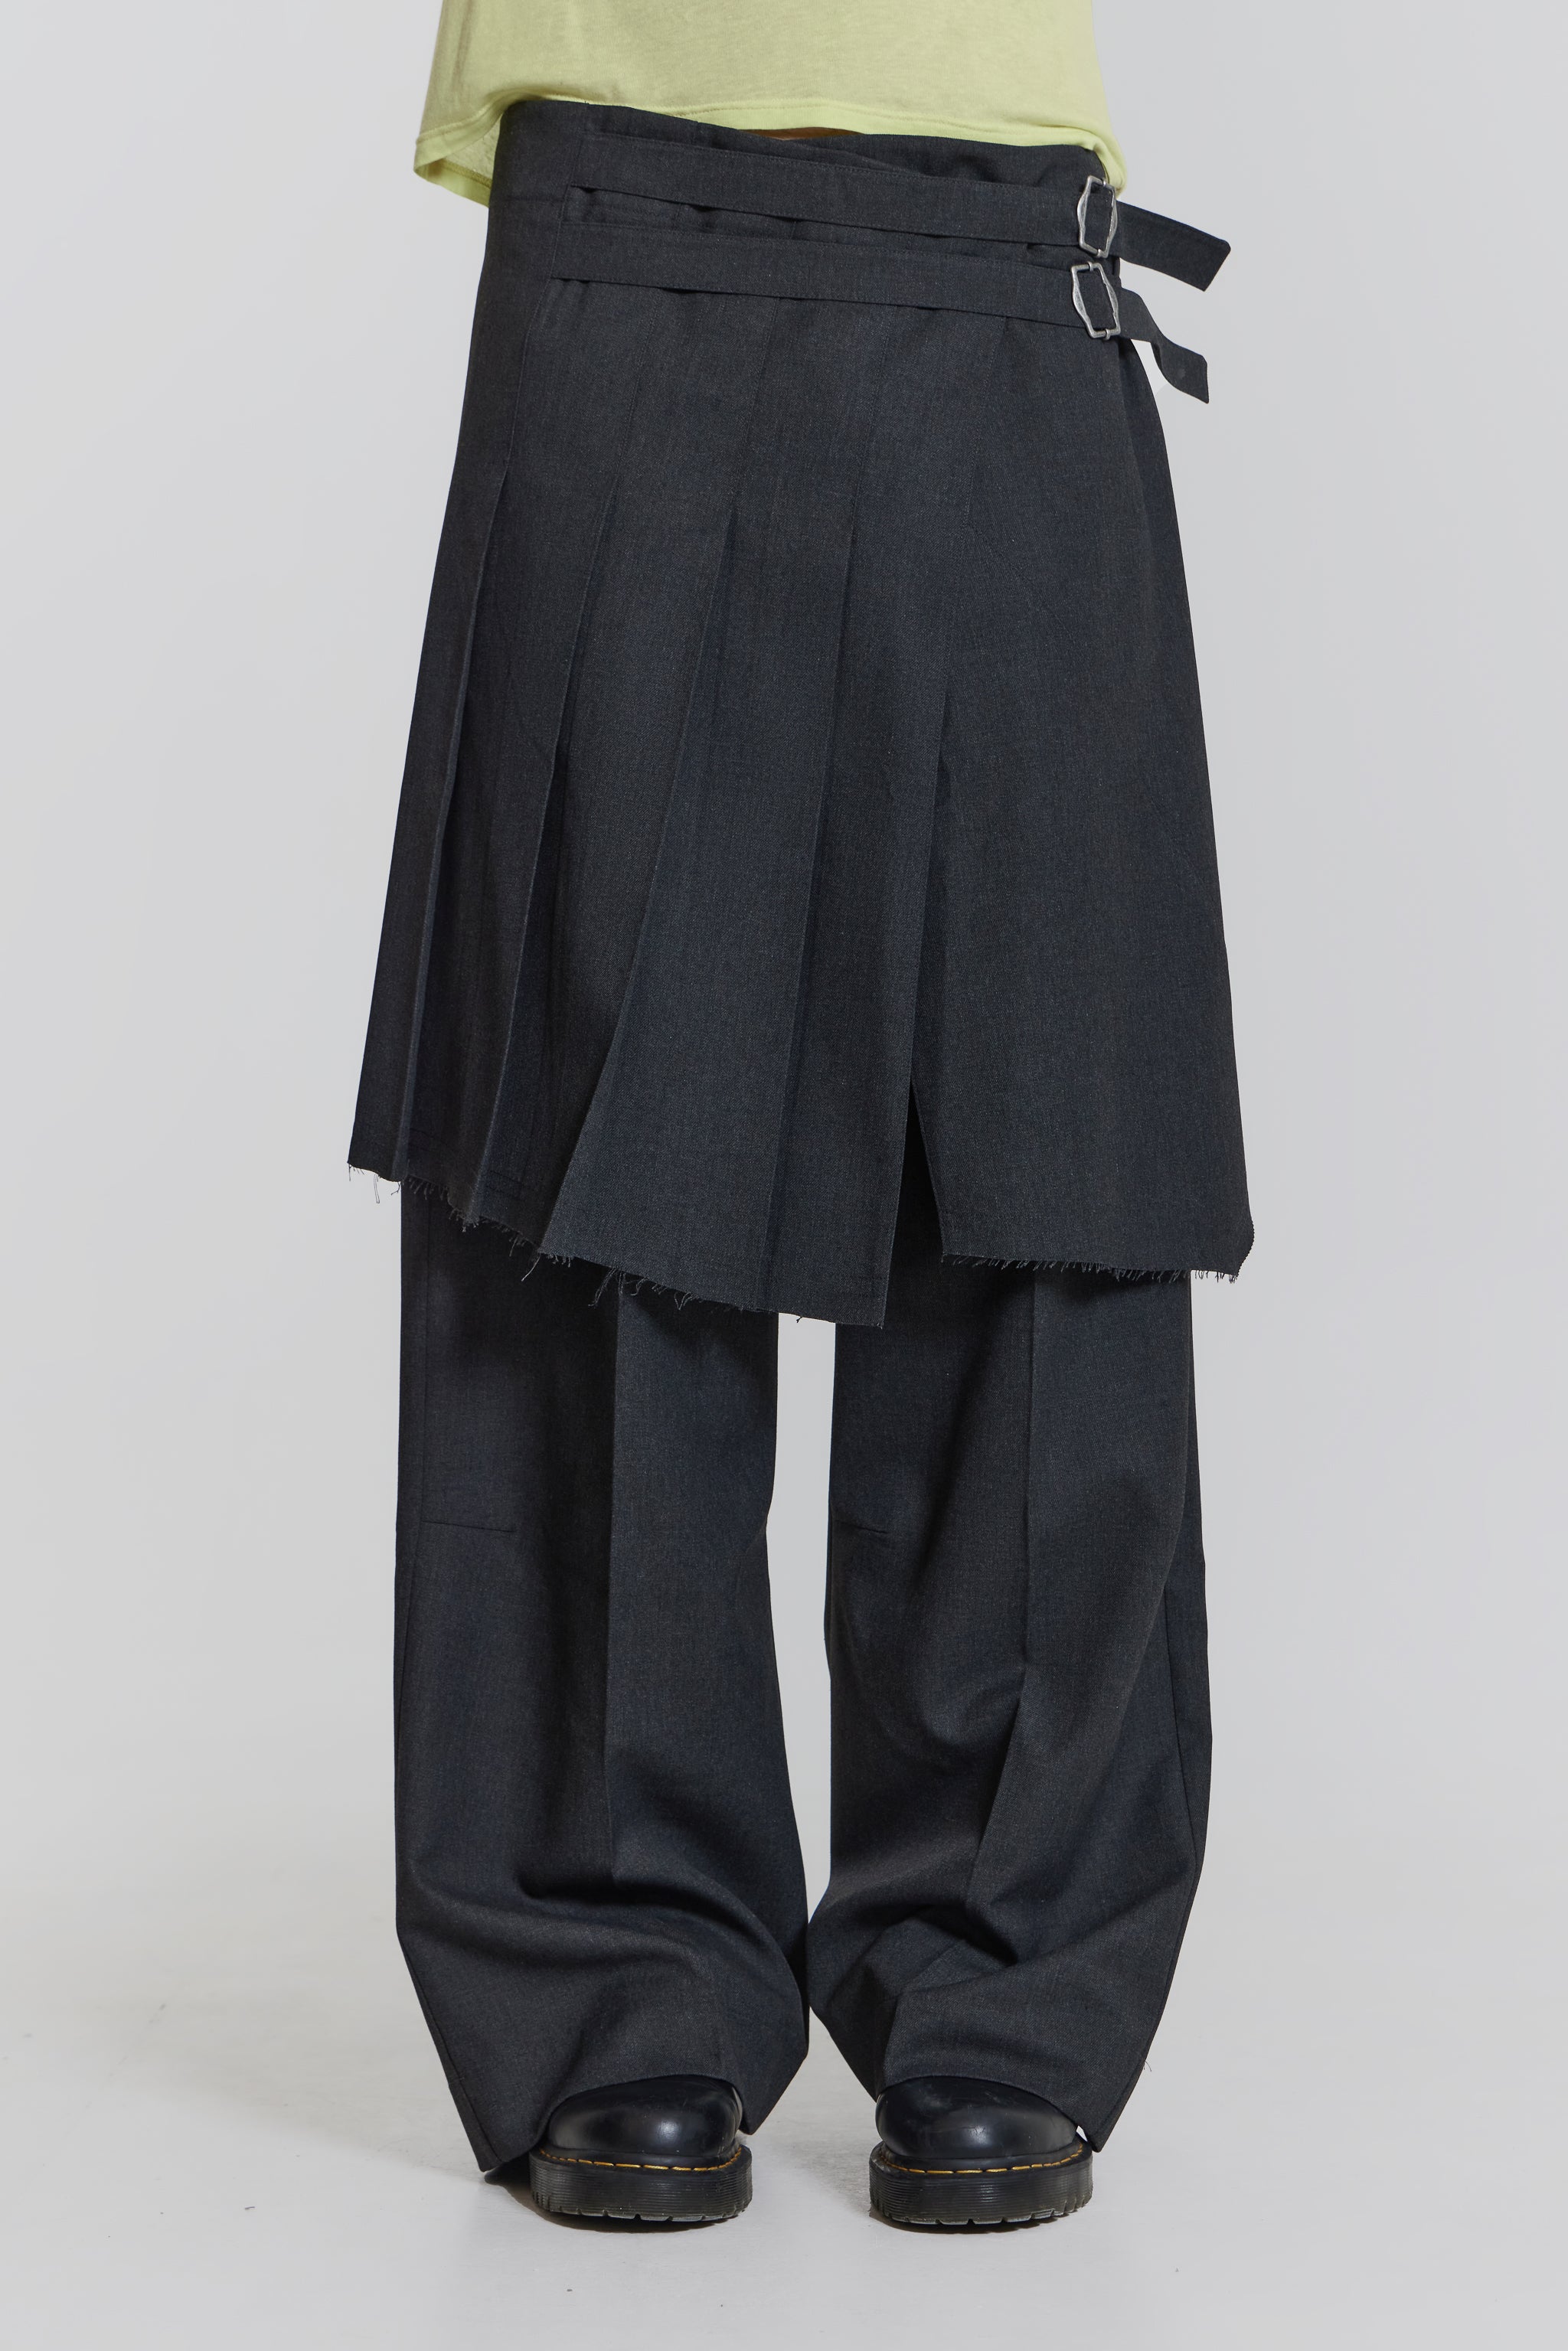 Jaded London Grey Steel Pleated Skirt